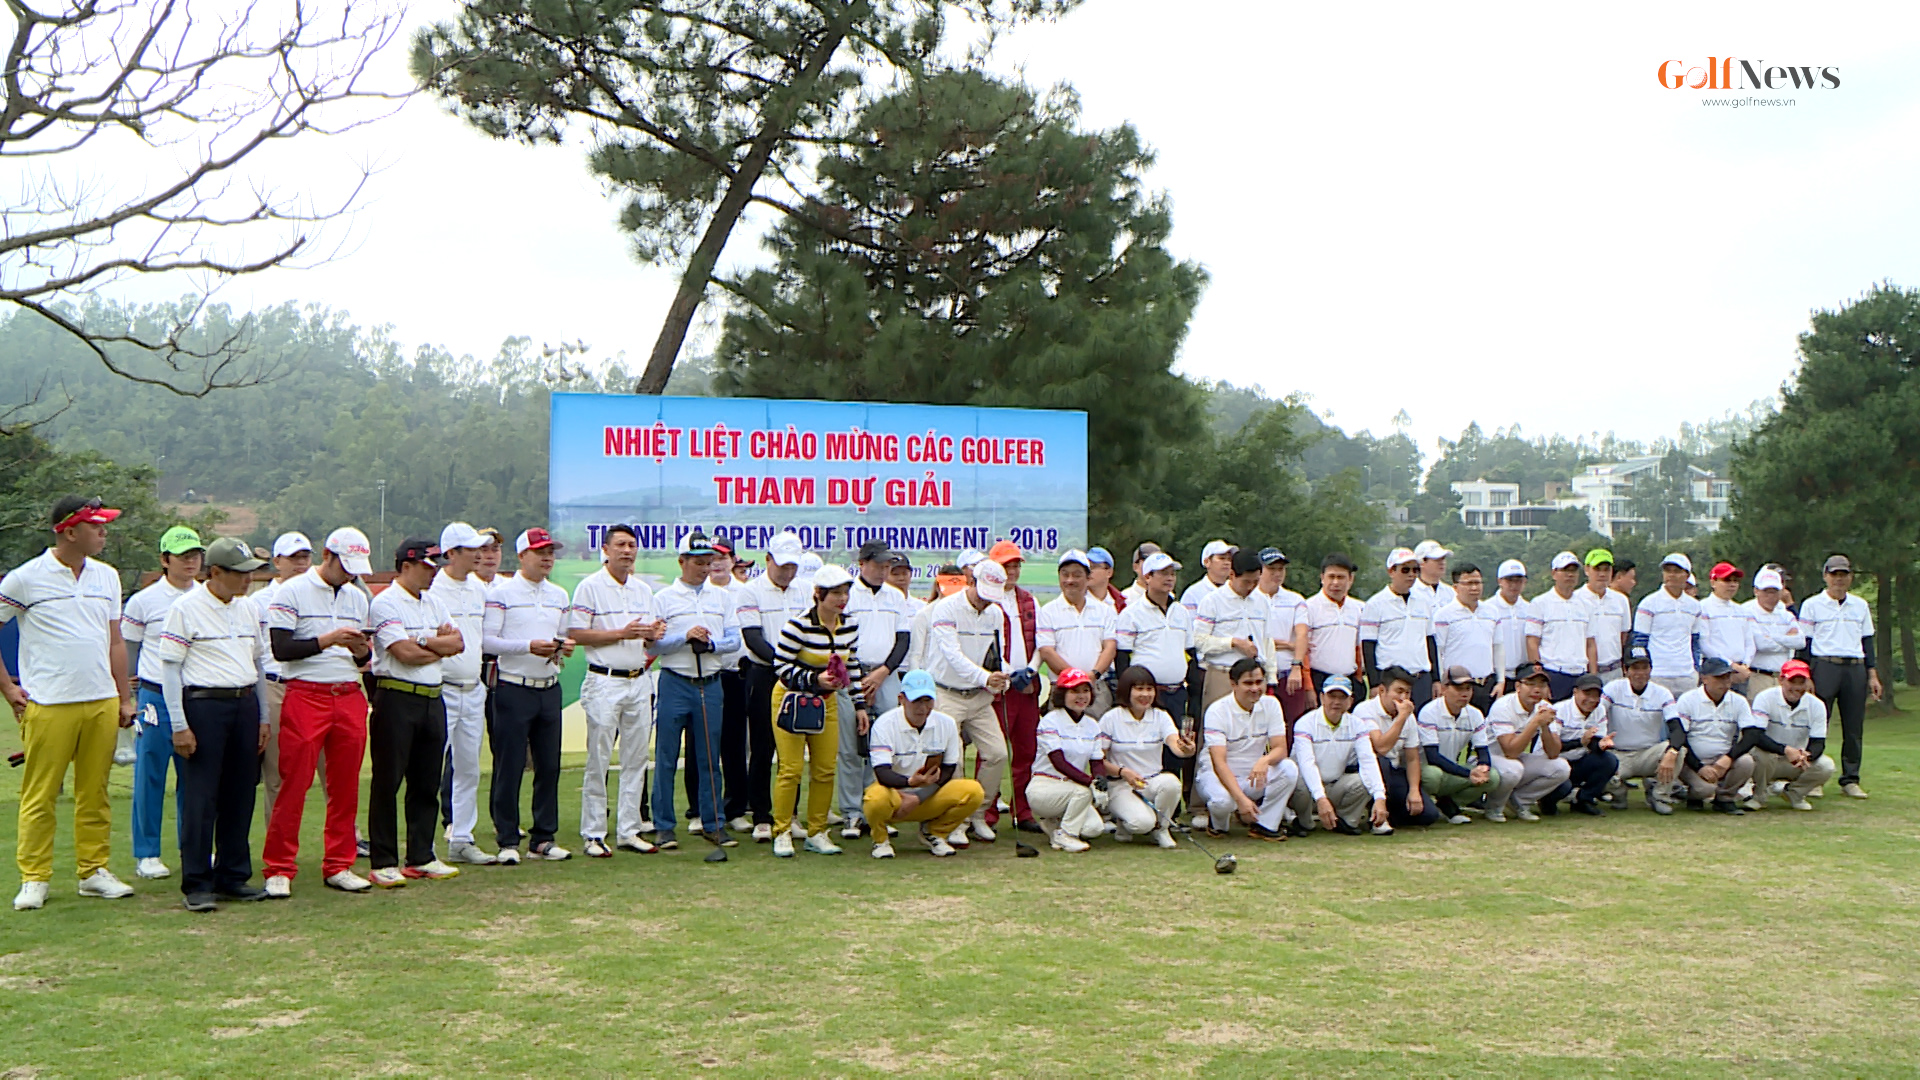 Sân tập Golf Thanh Hà tổ chức thành công giải đấu kỷ niệm 1 năm hoạt động